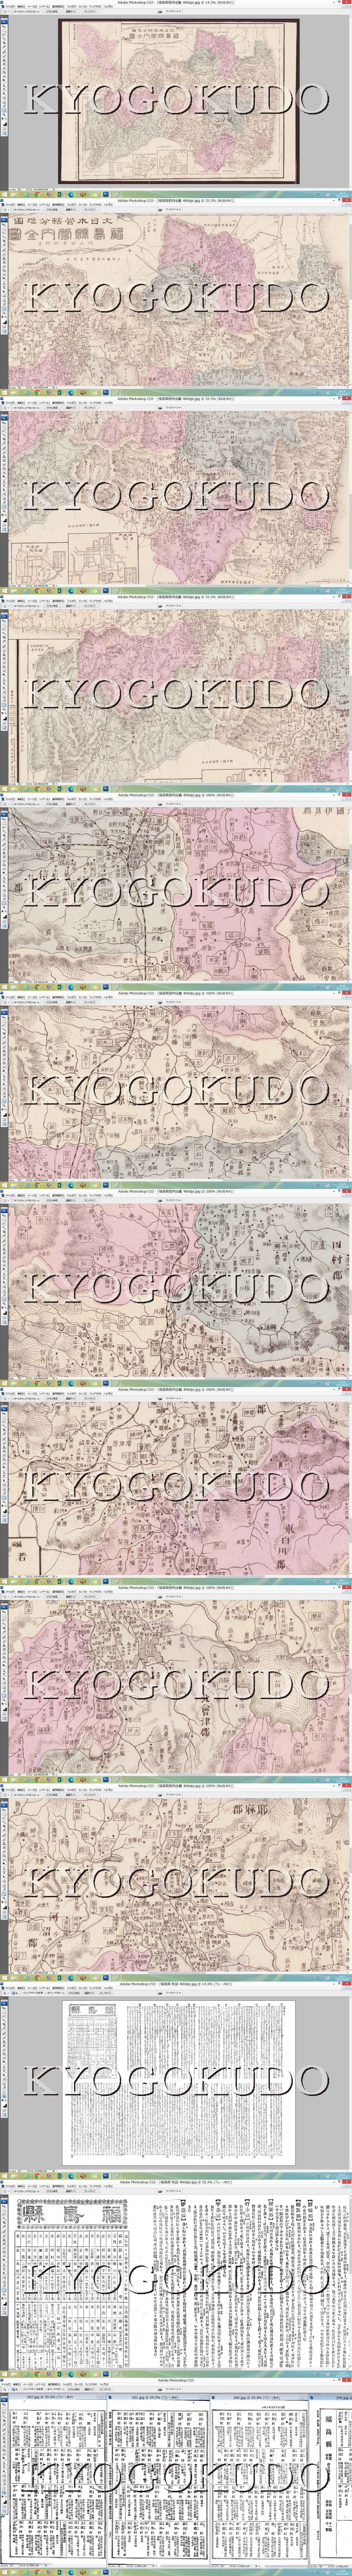 明治28年 大日本管轄分地図 福島県管内全図